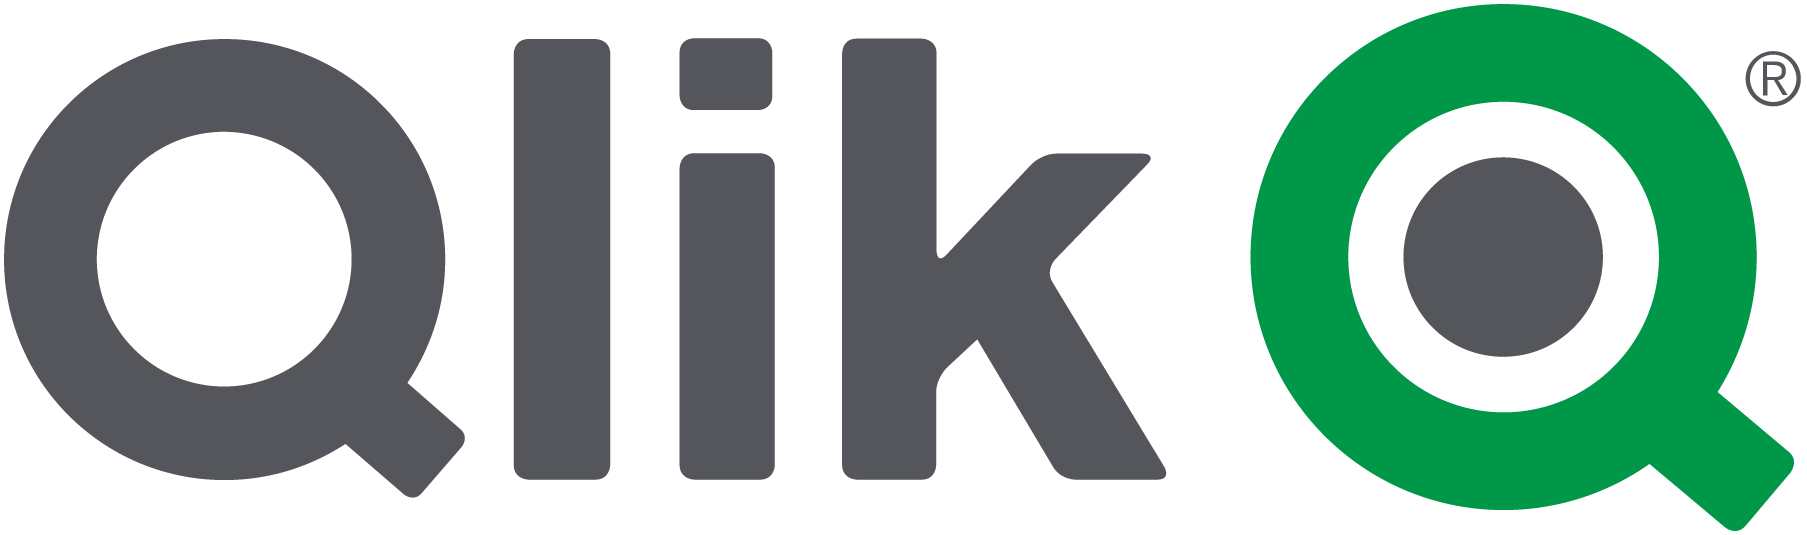 Logo Qlik ETL & Data Integration tools